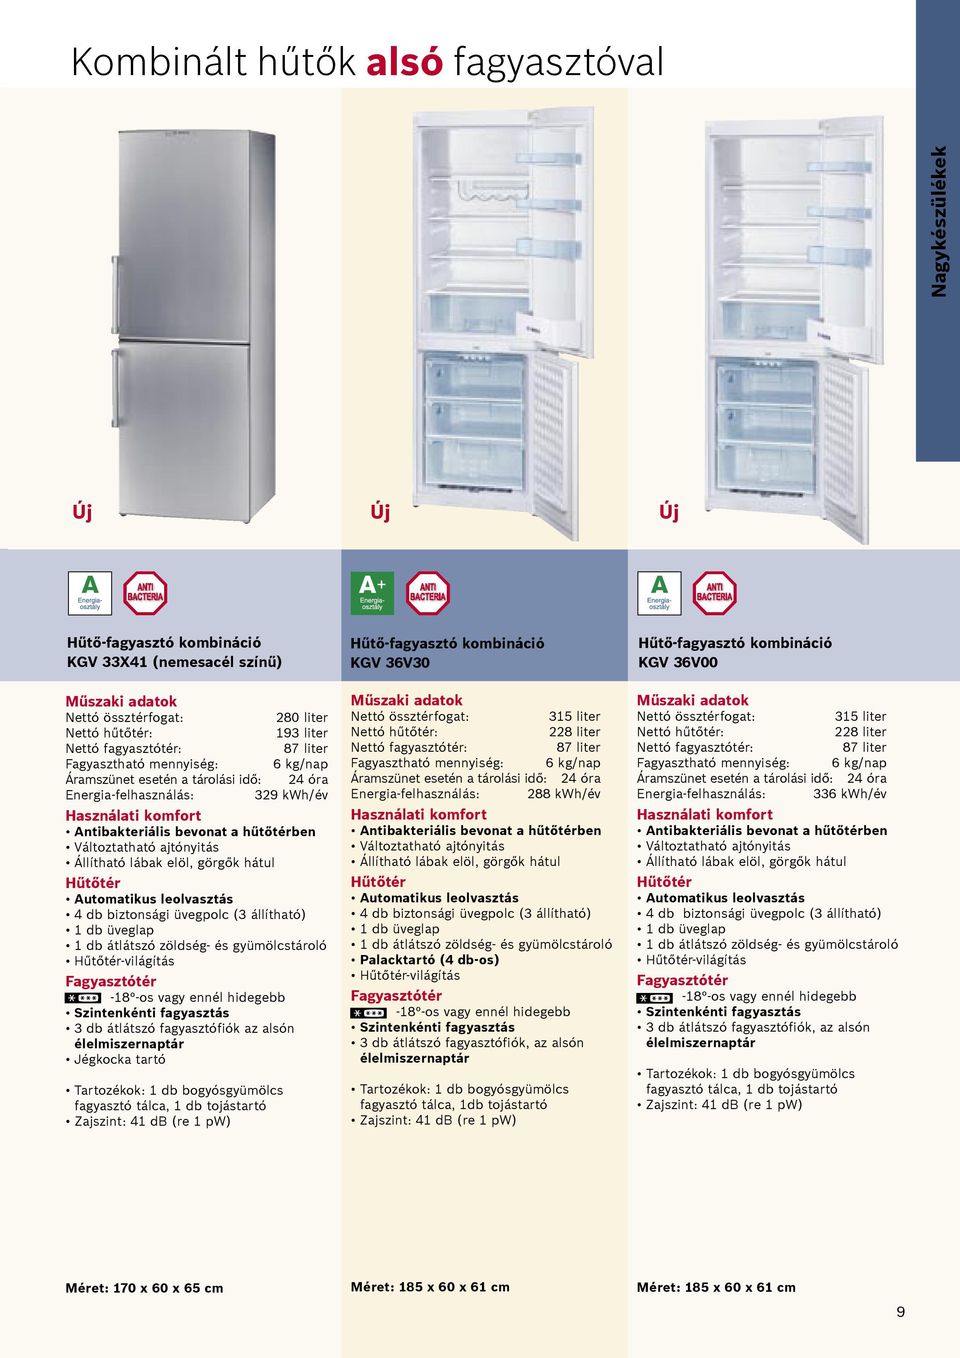 hátul Hűtőtér Automatikus leolvasztás 4 db biztonsági üvegpolc (3 állítható) 1 db üveglap 1 db átlátszó zöldség- és gyümölcstároló Hűtőtér-világítás Fagyasztótér -18 -os vagy ennél hidegebb